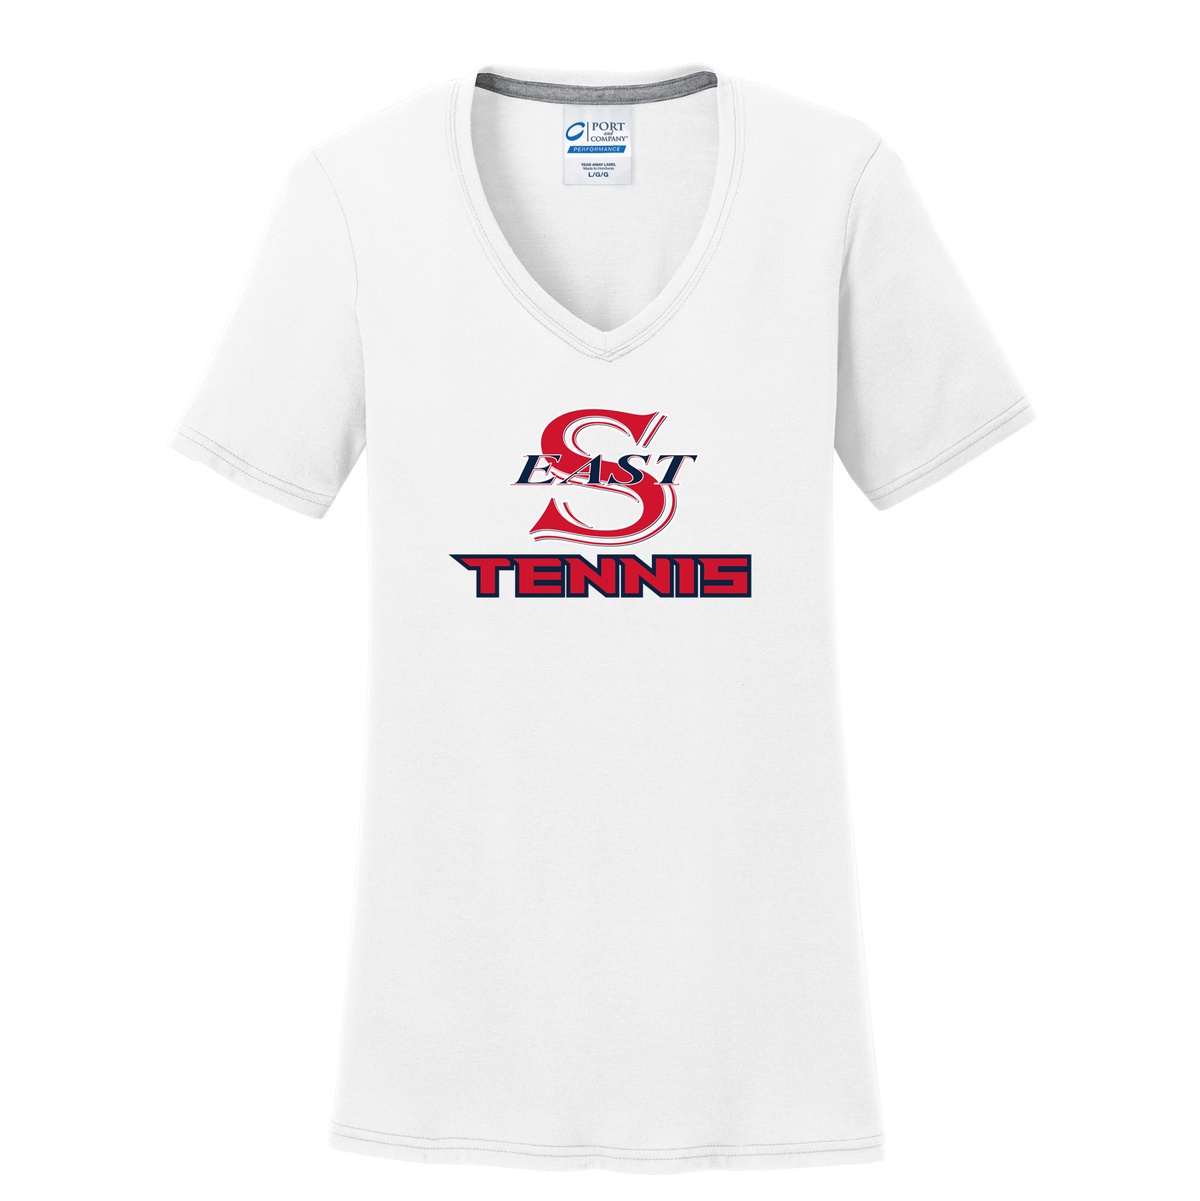 Smithtown East Tennis Women's T-Shirt